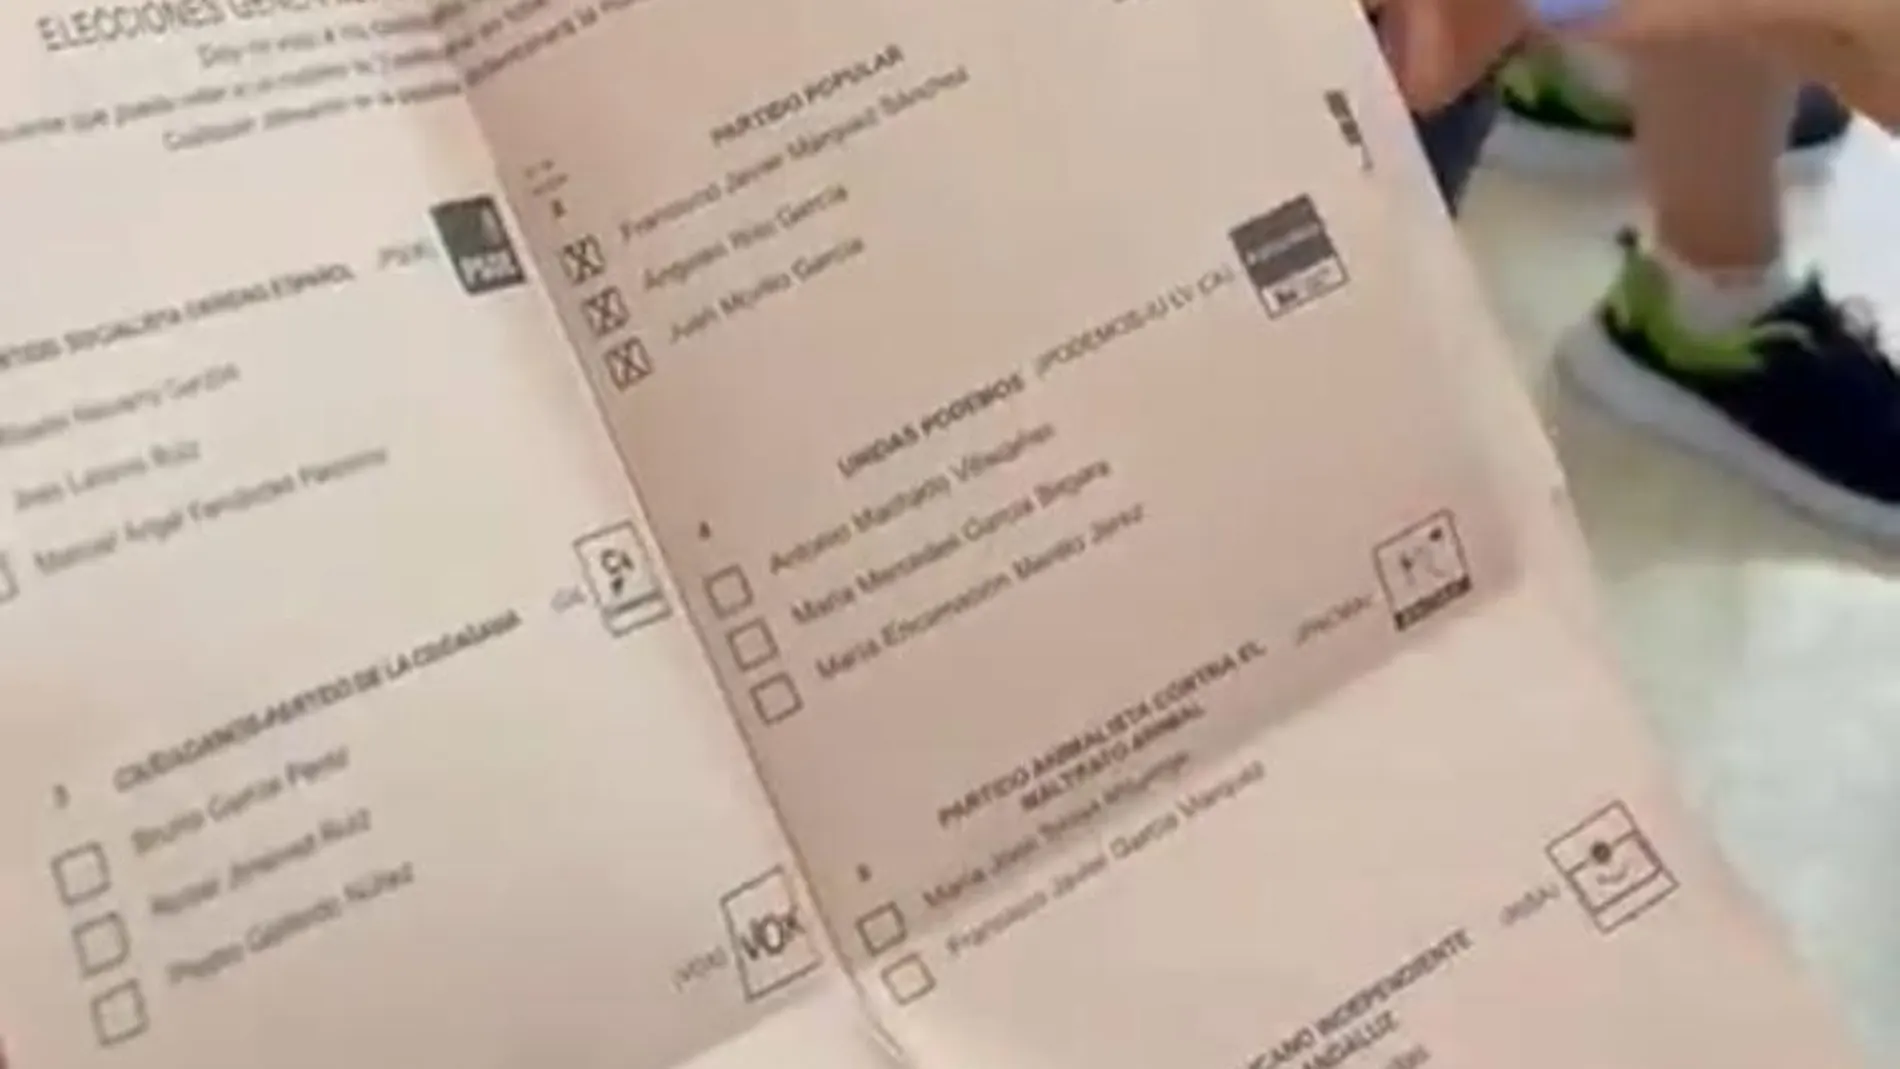 Papeletas de 2019 donde sale cruzada la candidatura del PP y se ve que concurre Cs y Podemos 